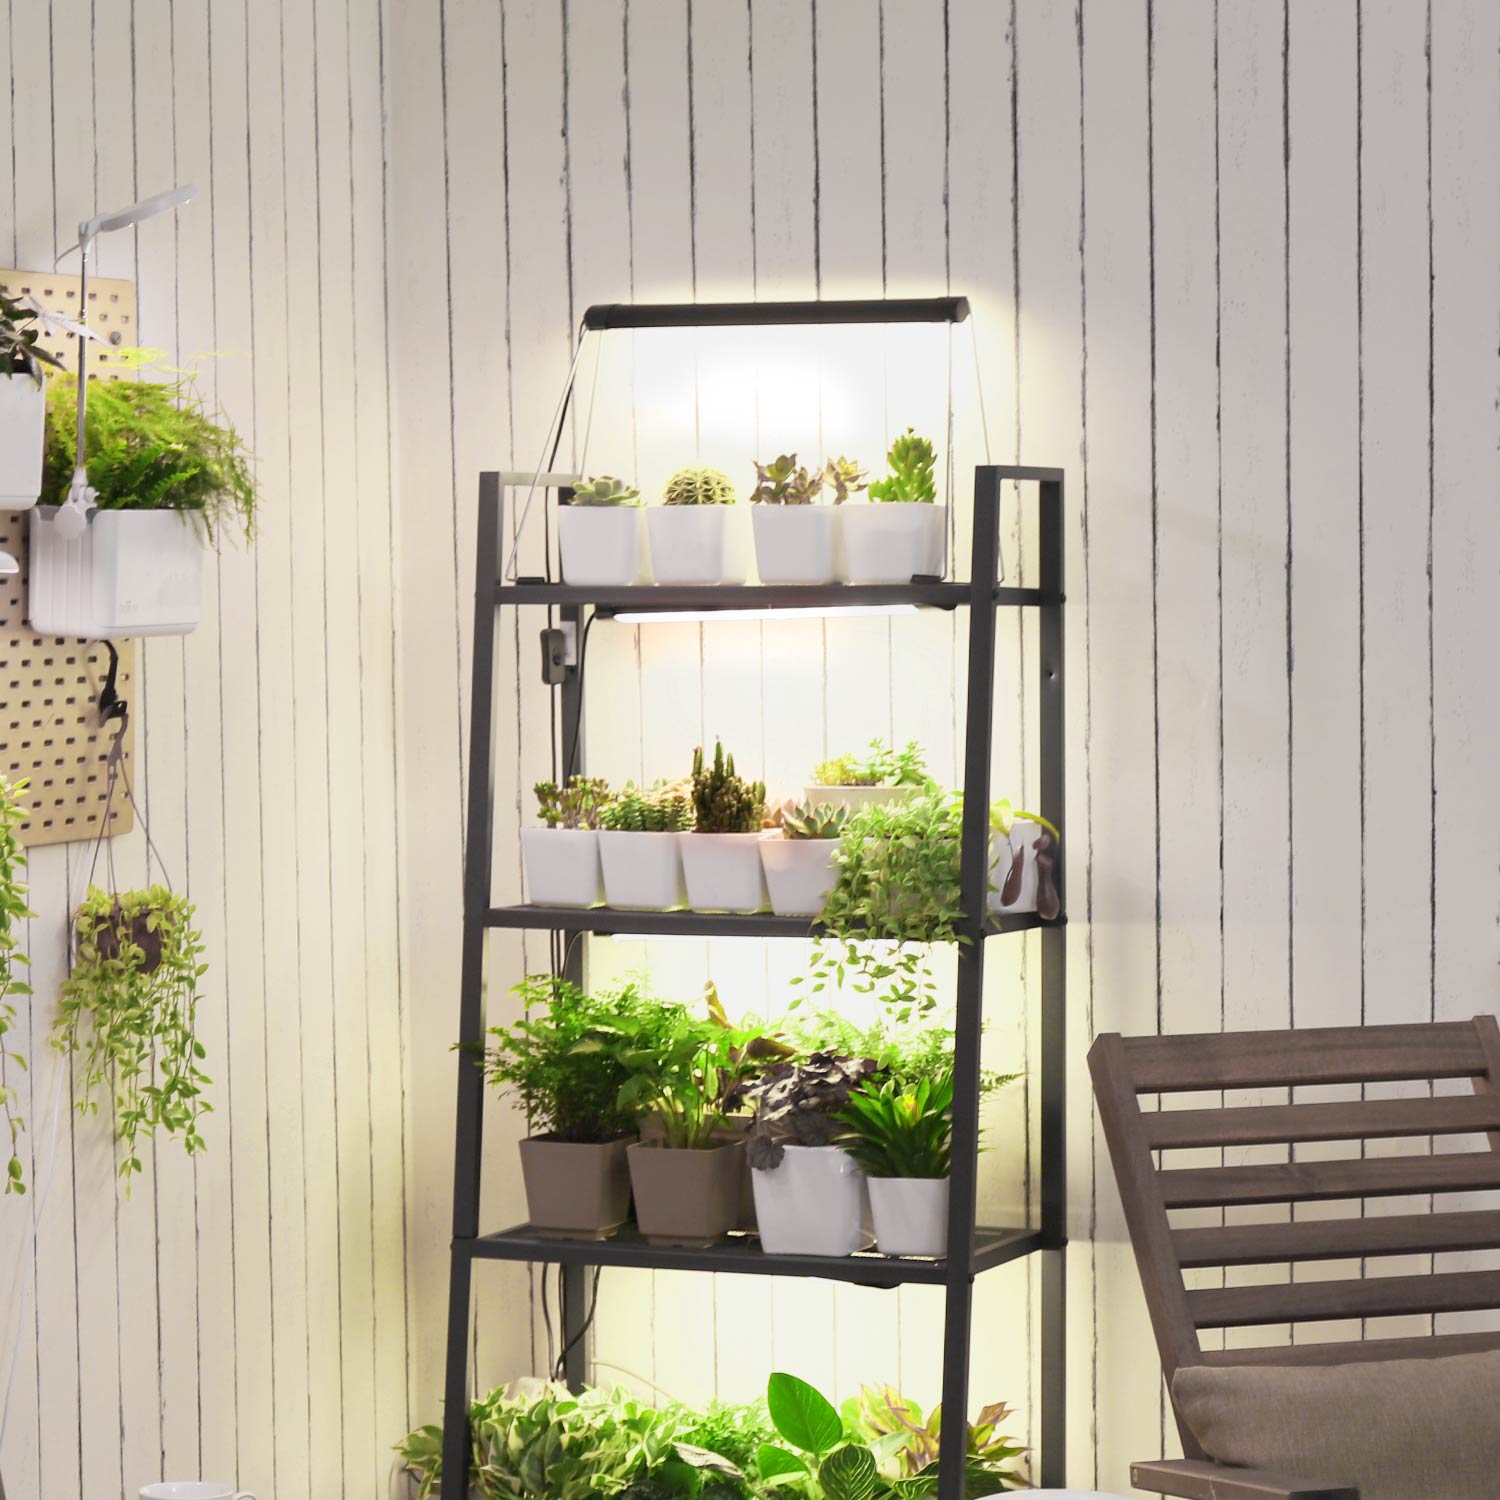 TG101 mini garden indoor, herb garden starter kit, plant light for succulents